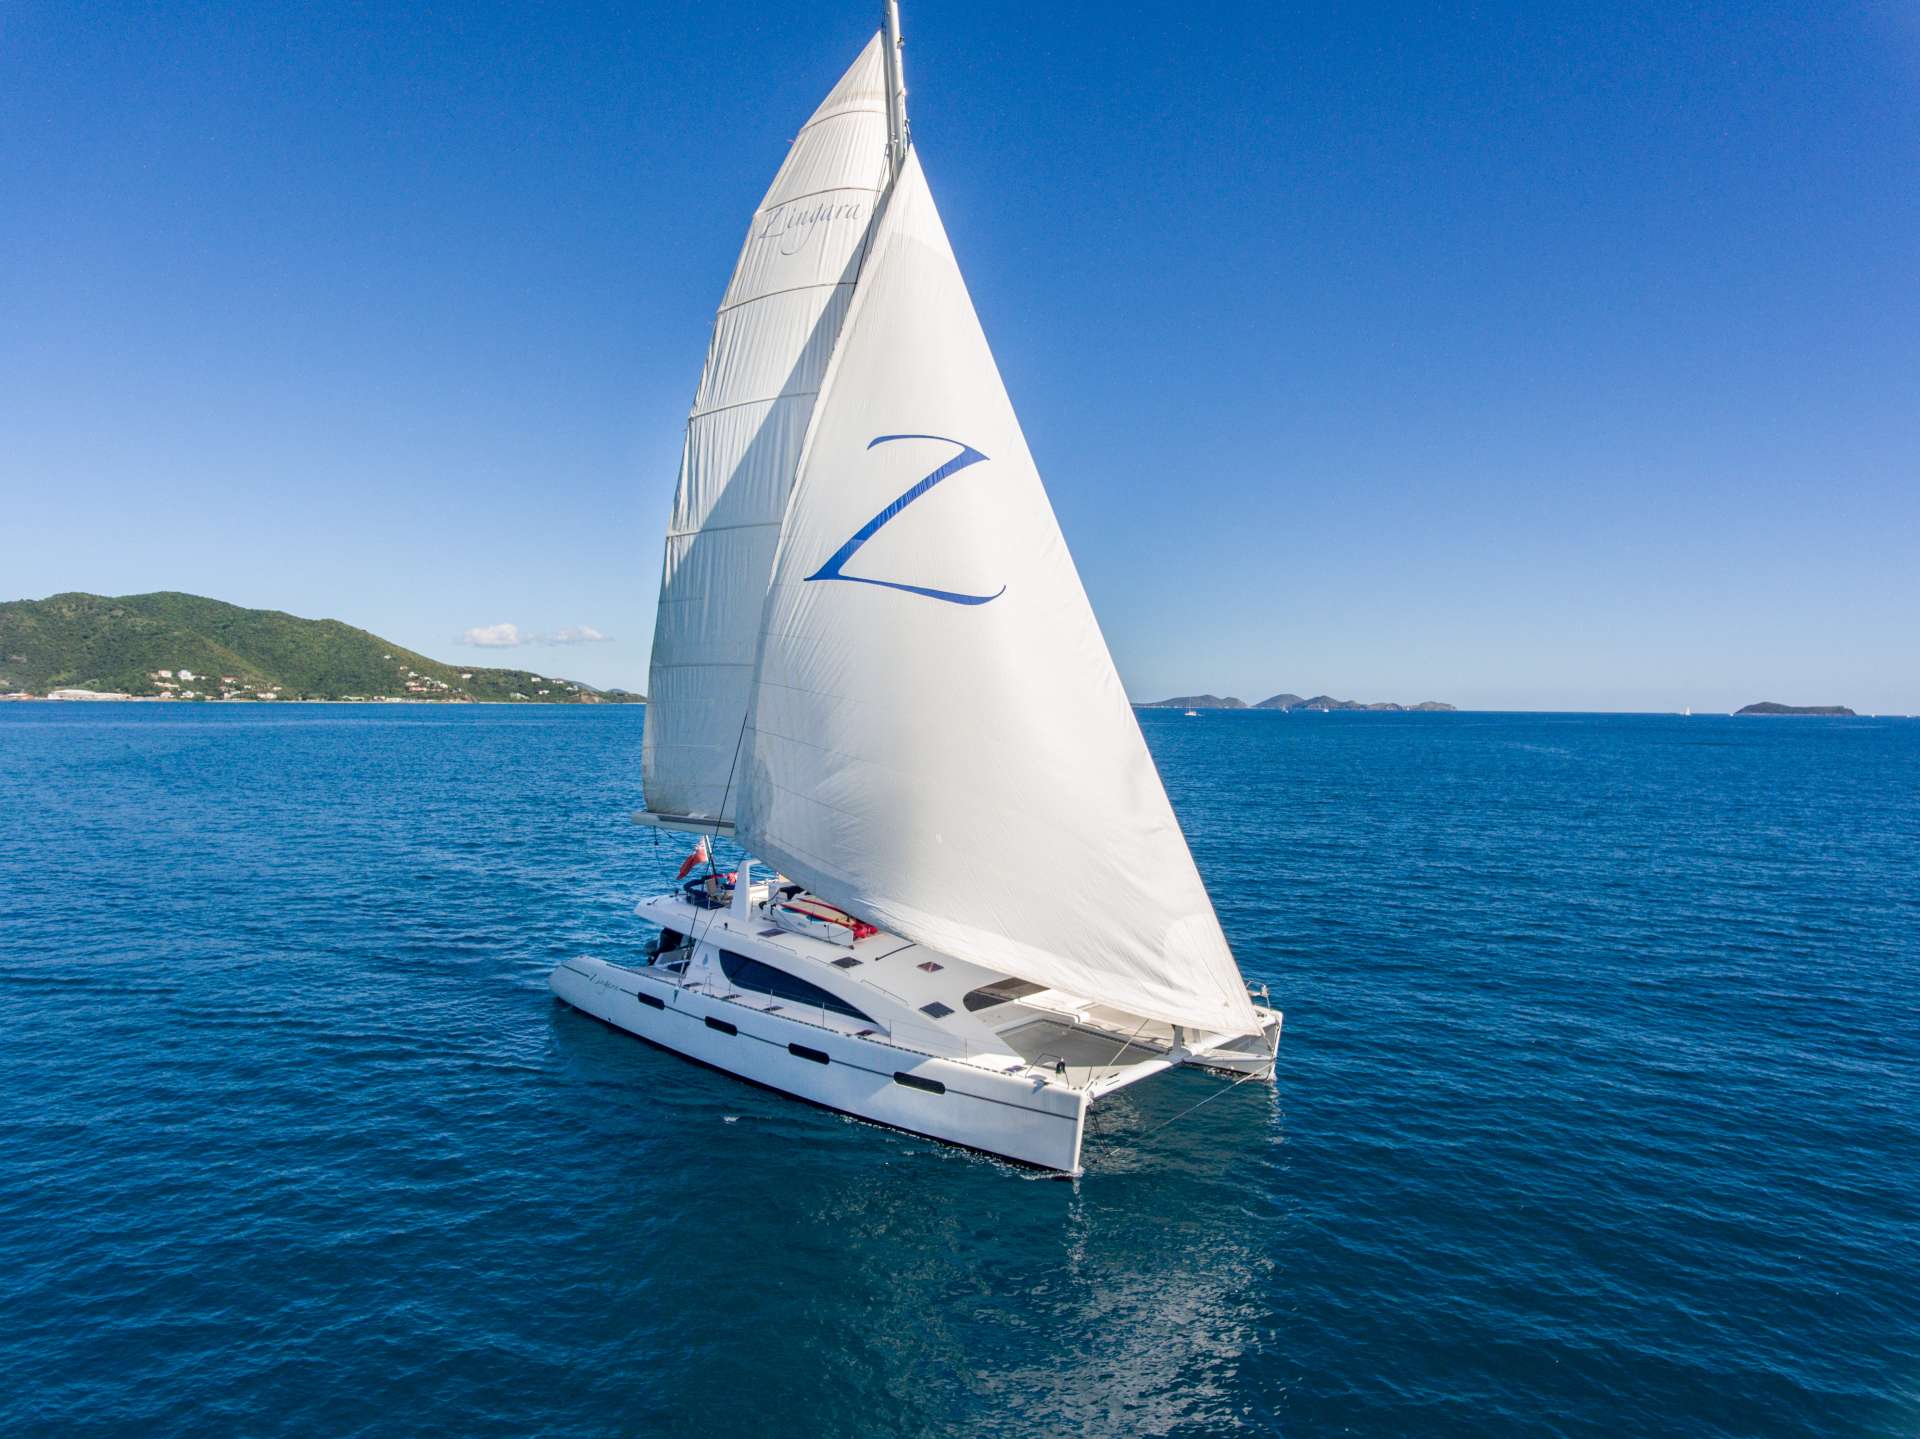 ZINGARA Yacht Charter - Flying the "Code Zero" sail